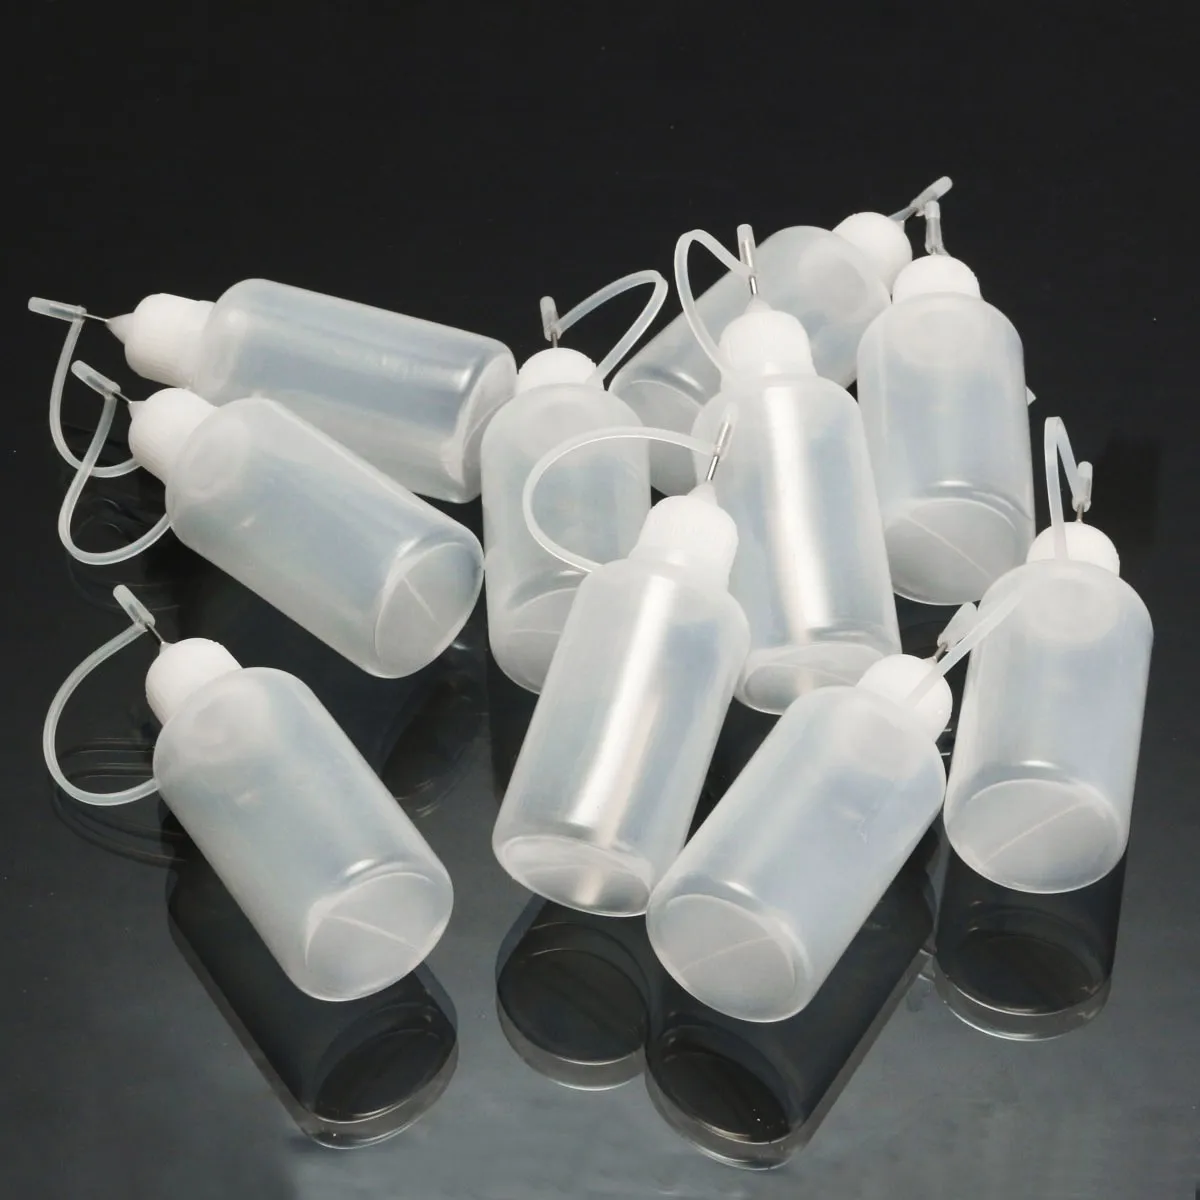 10 шт. бутылочки-аппликаторы для кончиков 30 мл прецизионные пластиковые бутылочки для капельницы